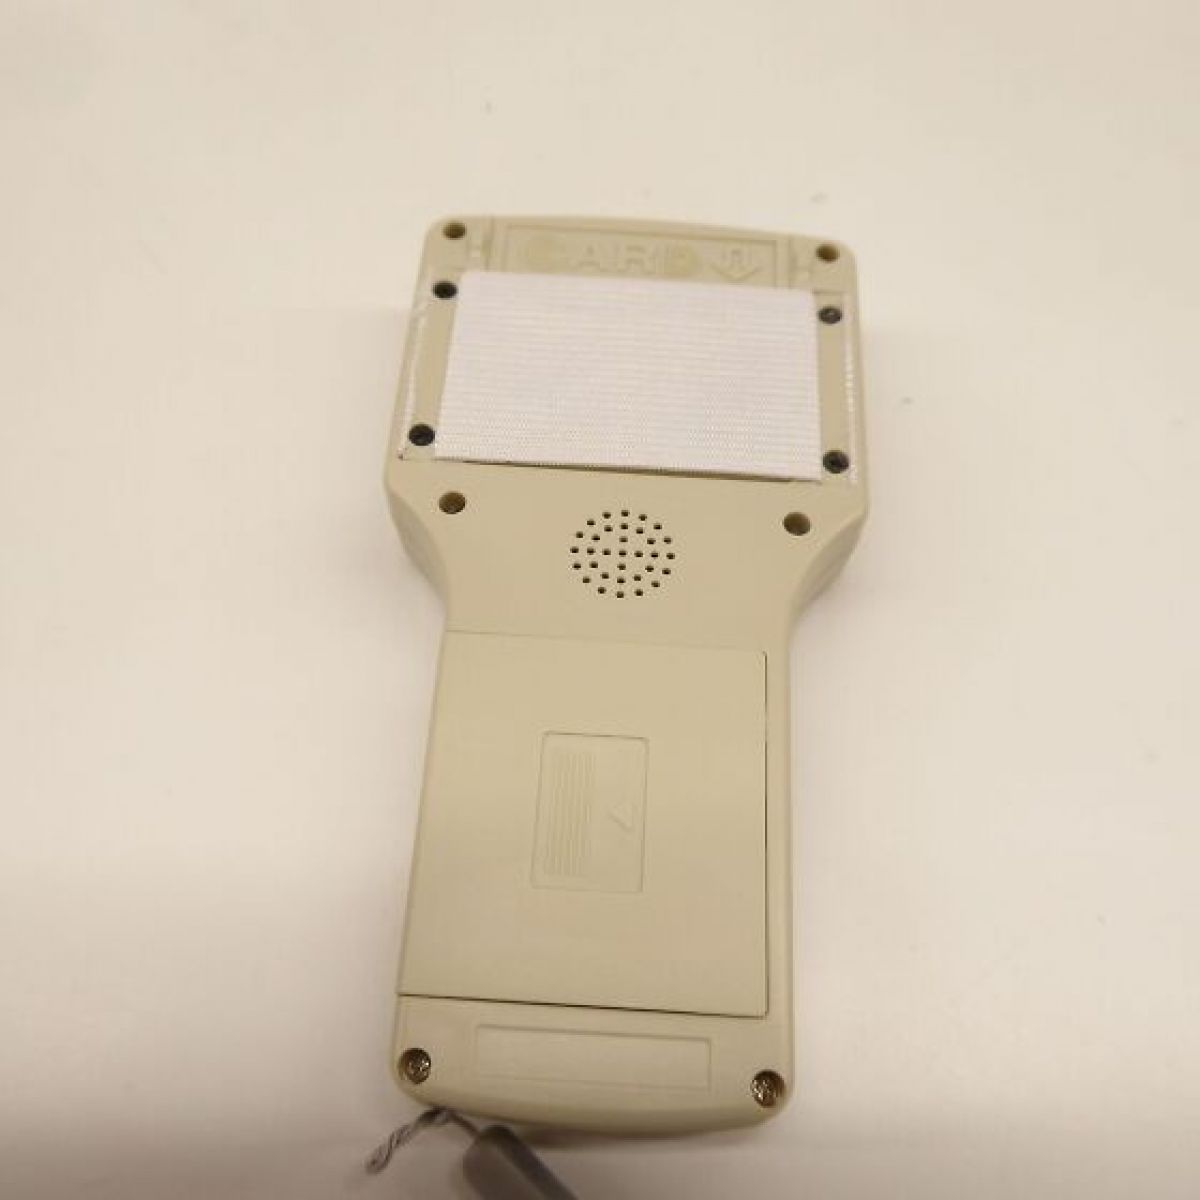 Kadongli - KDL RFID kiipkaardilugeja kirjutaja NFC